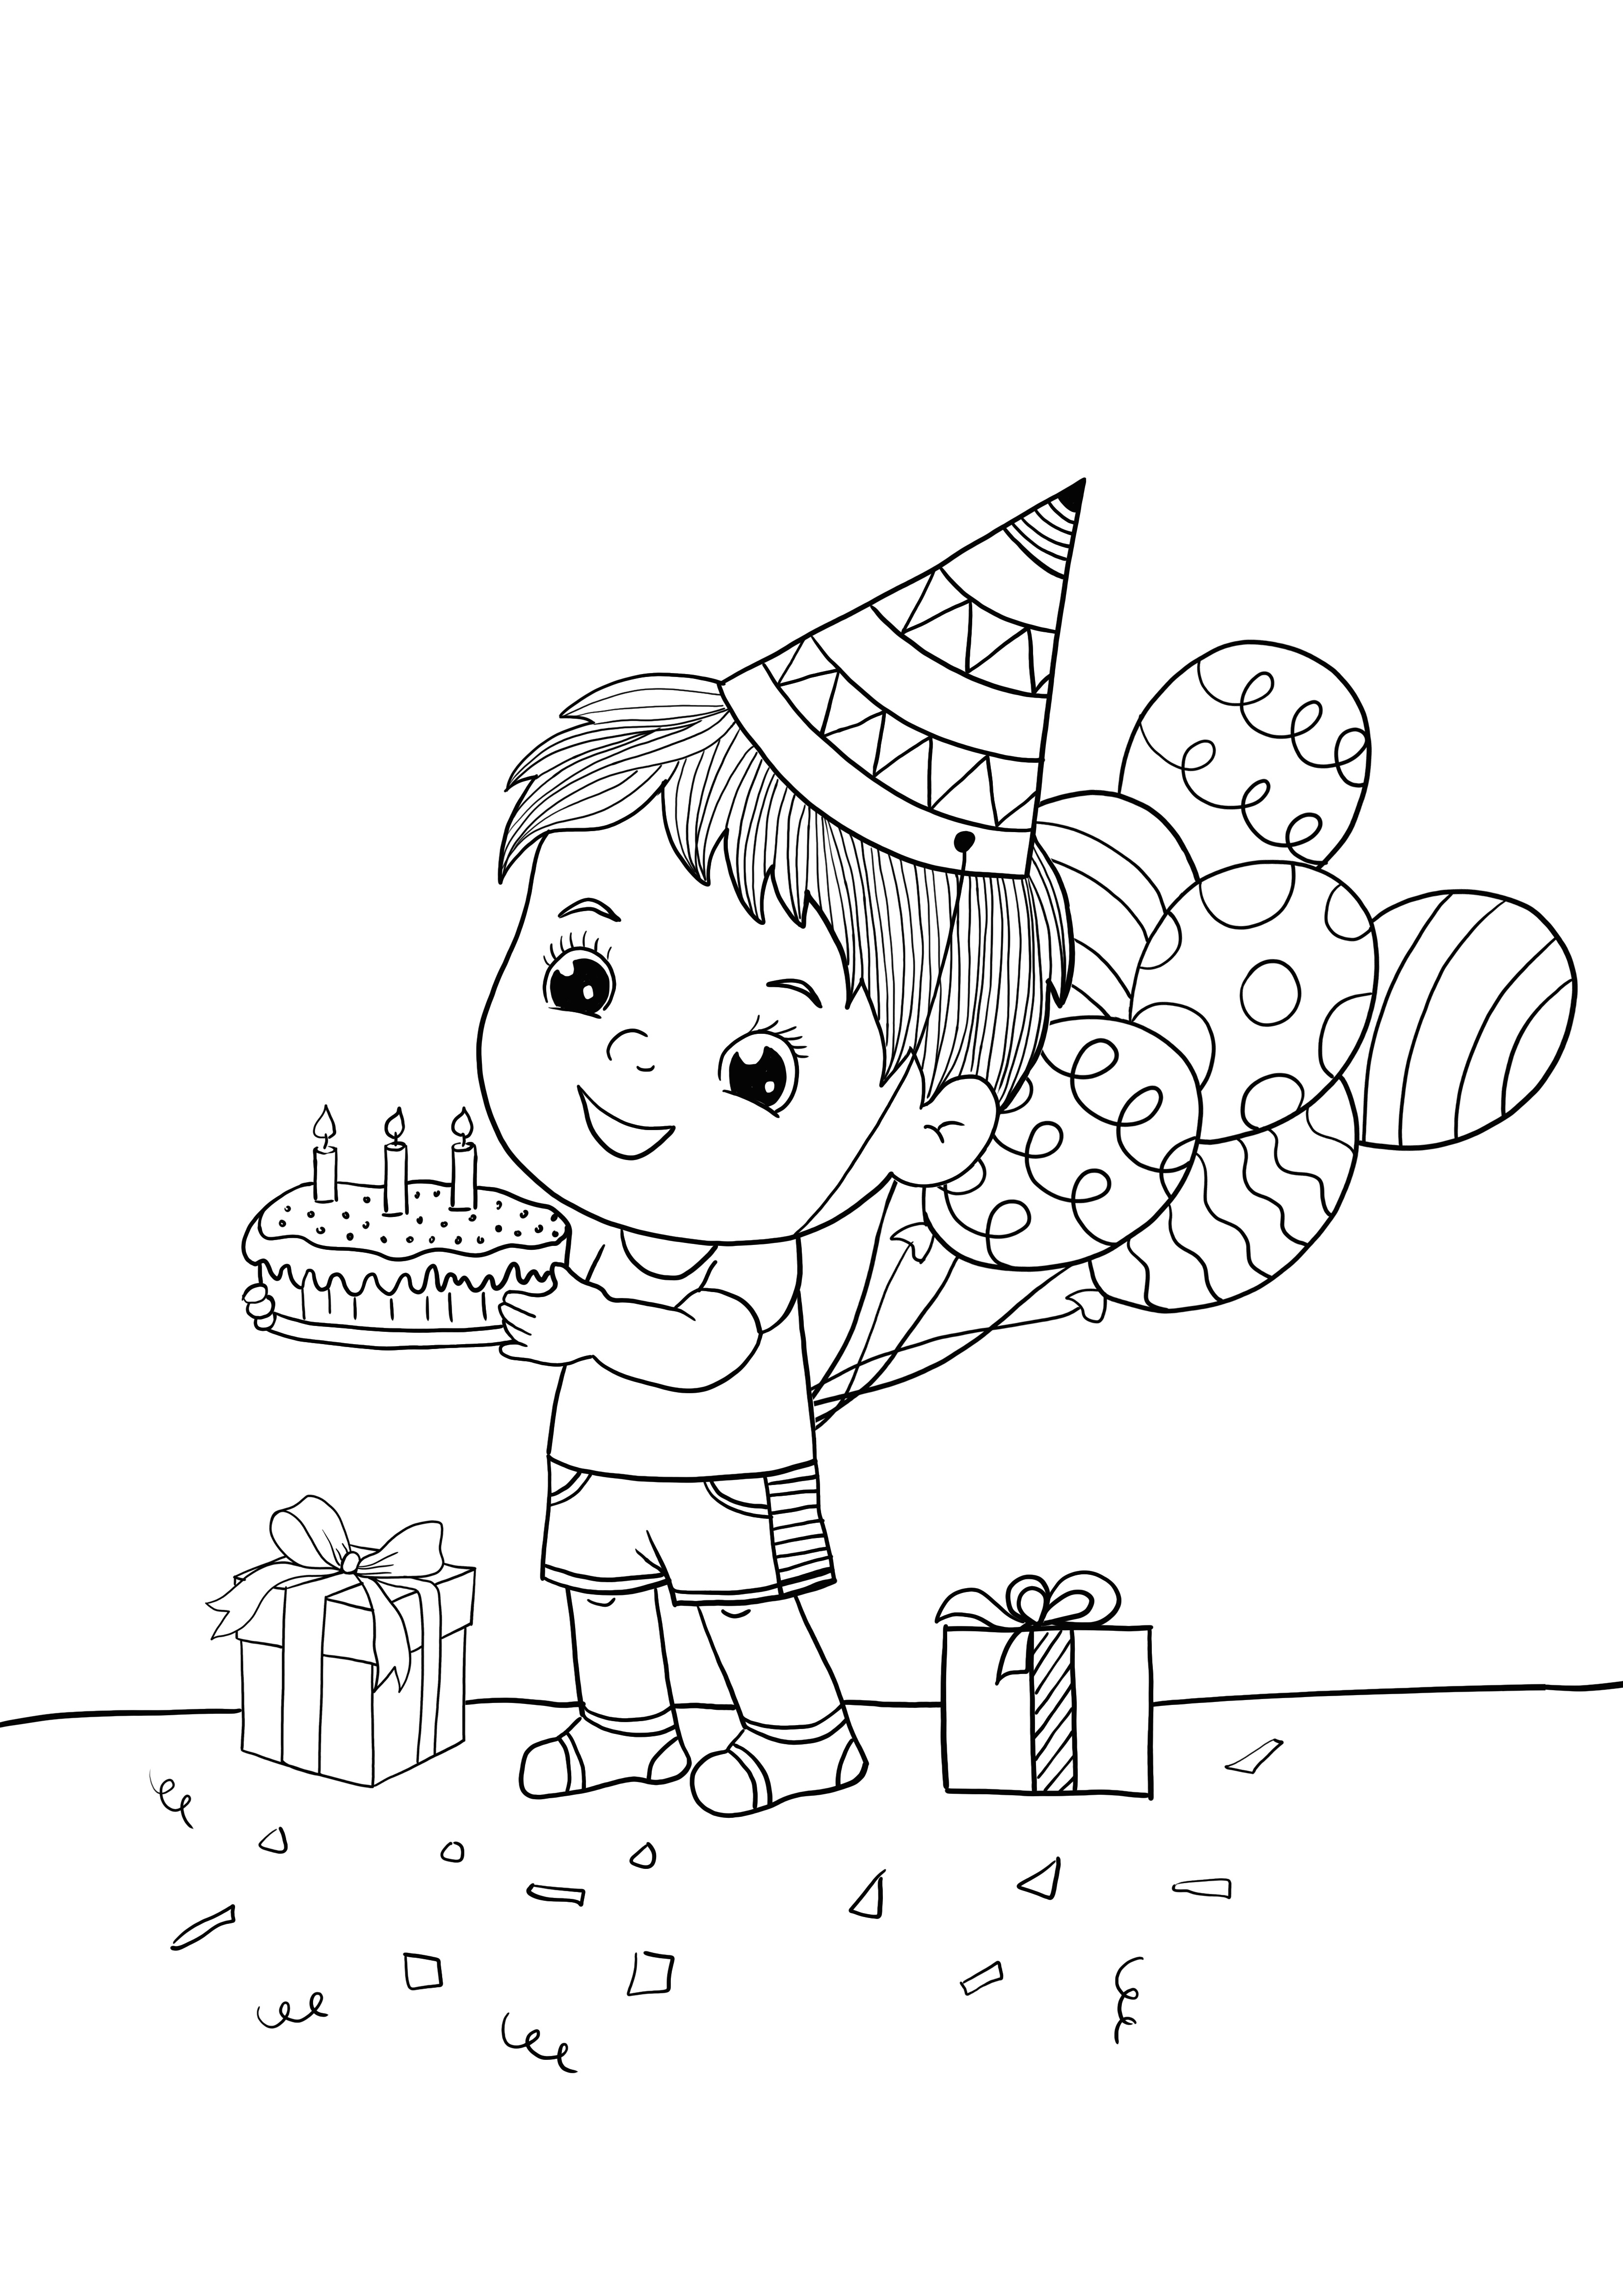 Doğum günü çocuğu boyama ve ücretsiz sayfa yazdırma